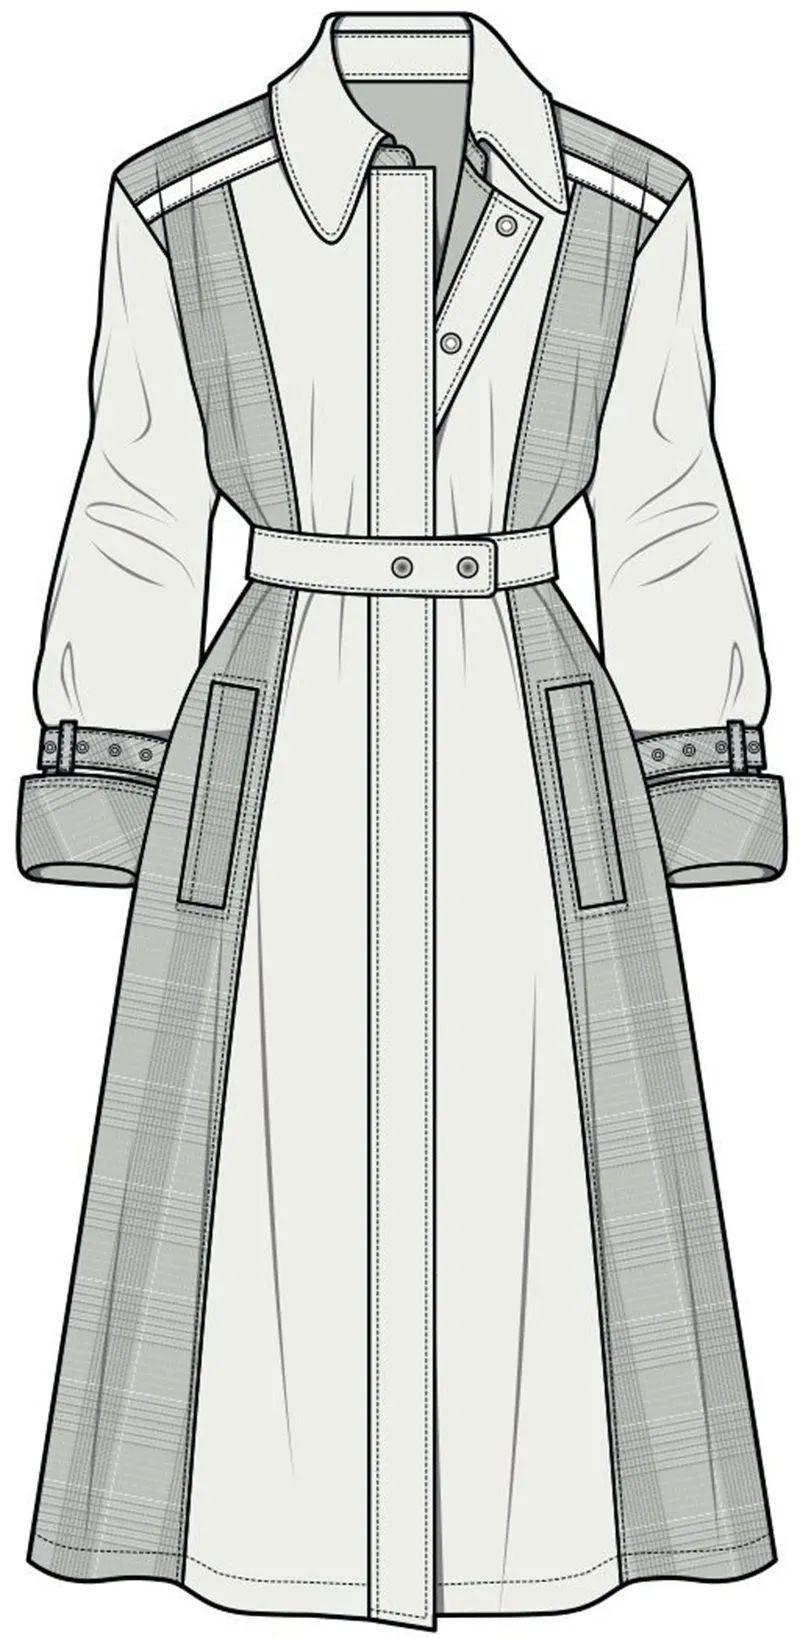 160例外套:夹克、大衣、风衣、西服、羽绒服款式图!(参考模板)!